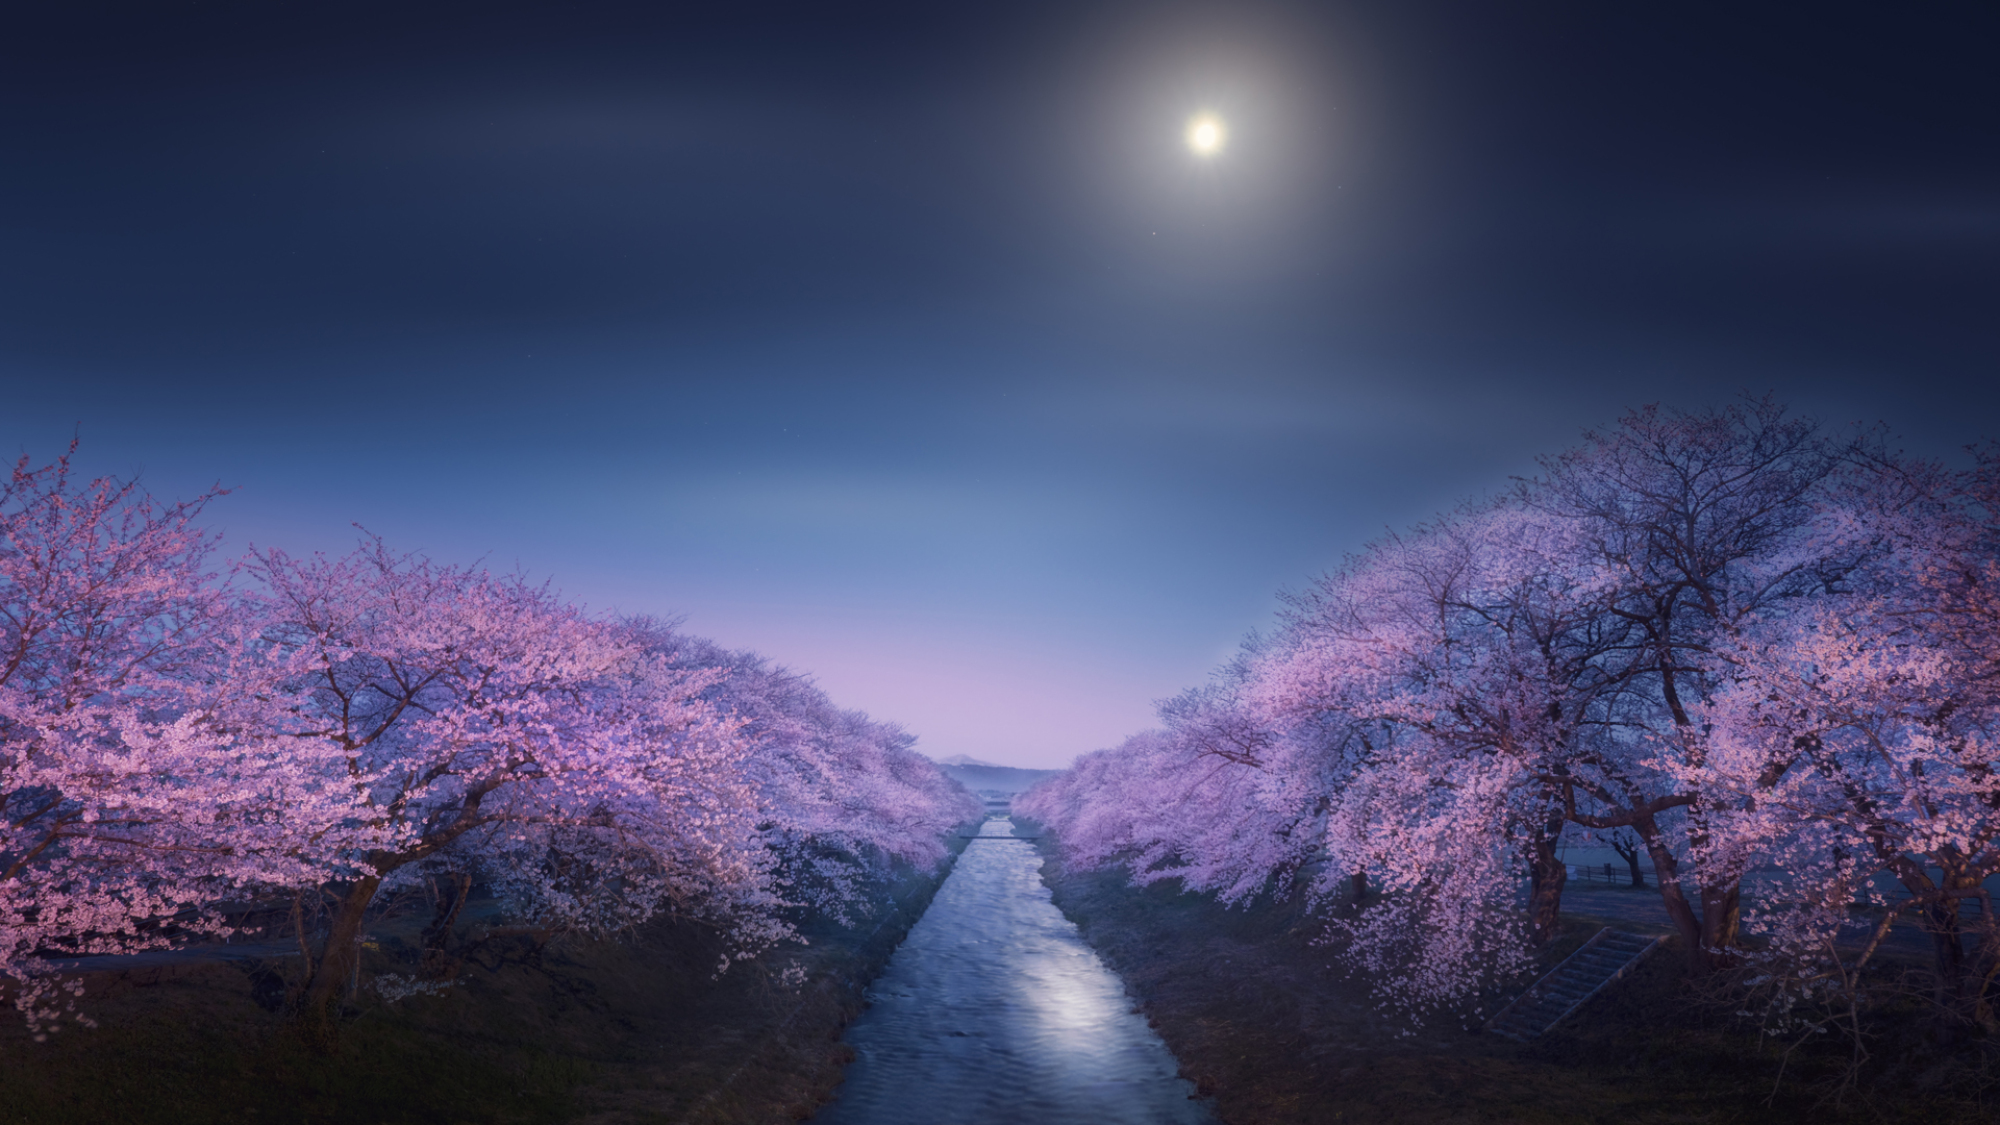 Une rivière baignée d'une lumière violette avec la lune dans le ciel.